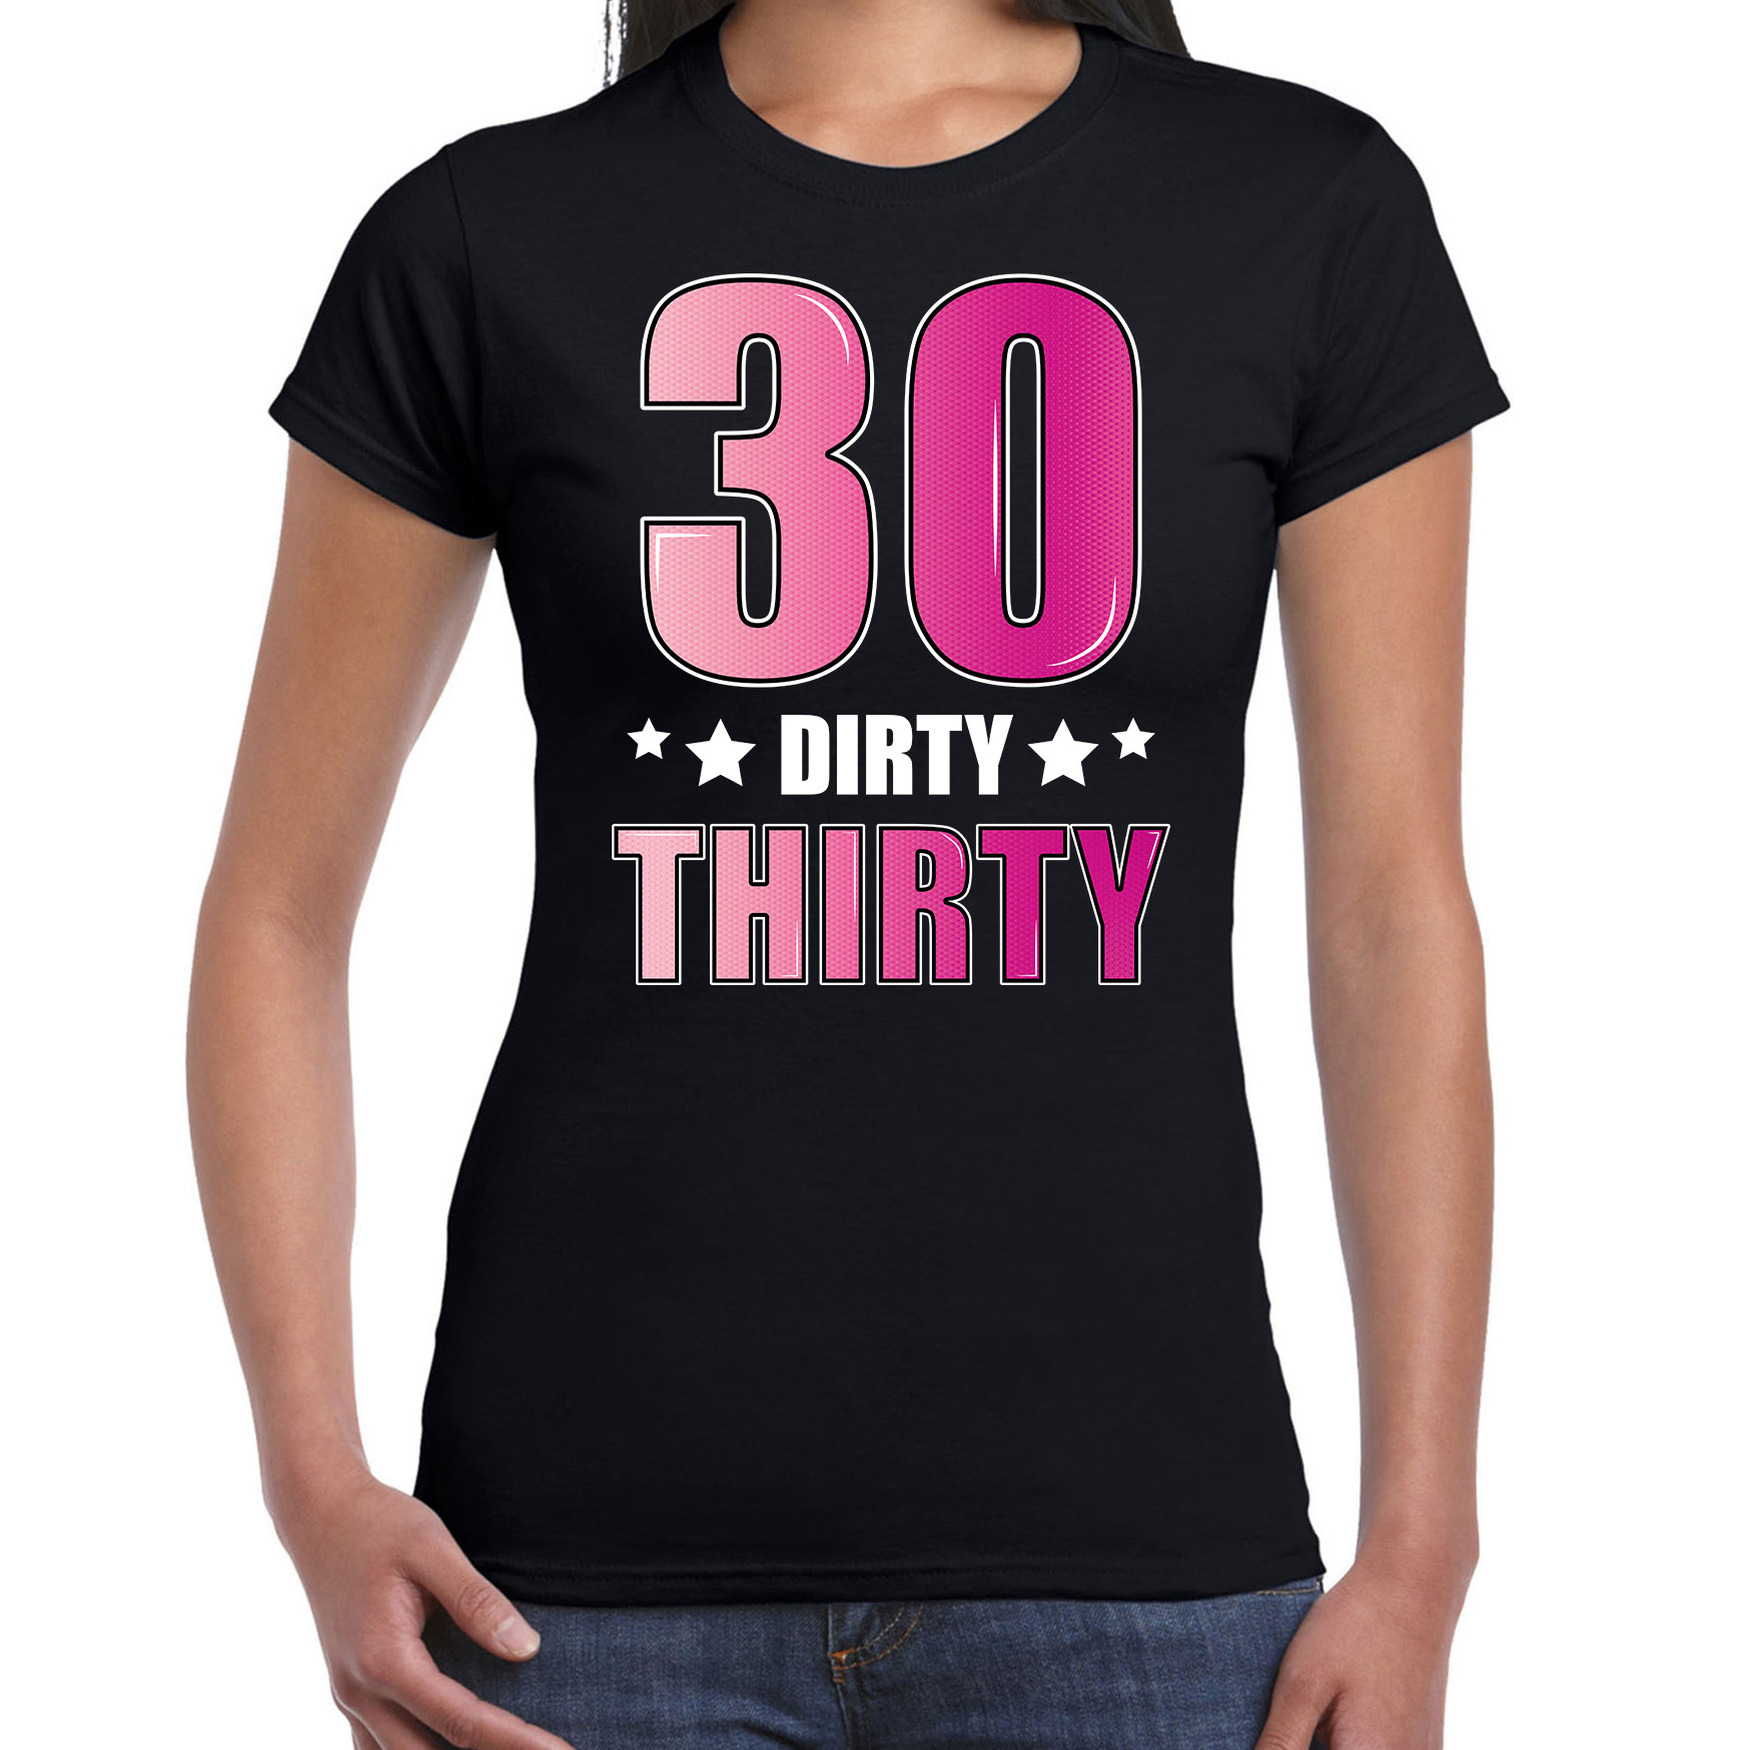 30 Dirty thirty verjaardag fout cadeau t-shirt / shirt 30 jaar zwart voor dames